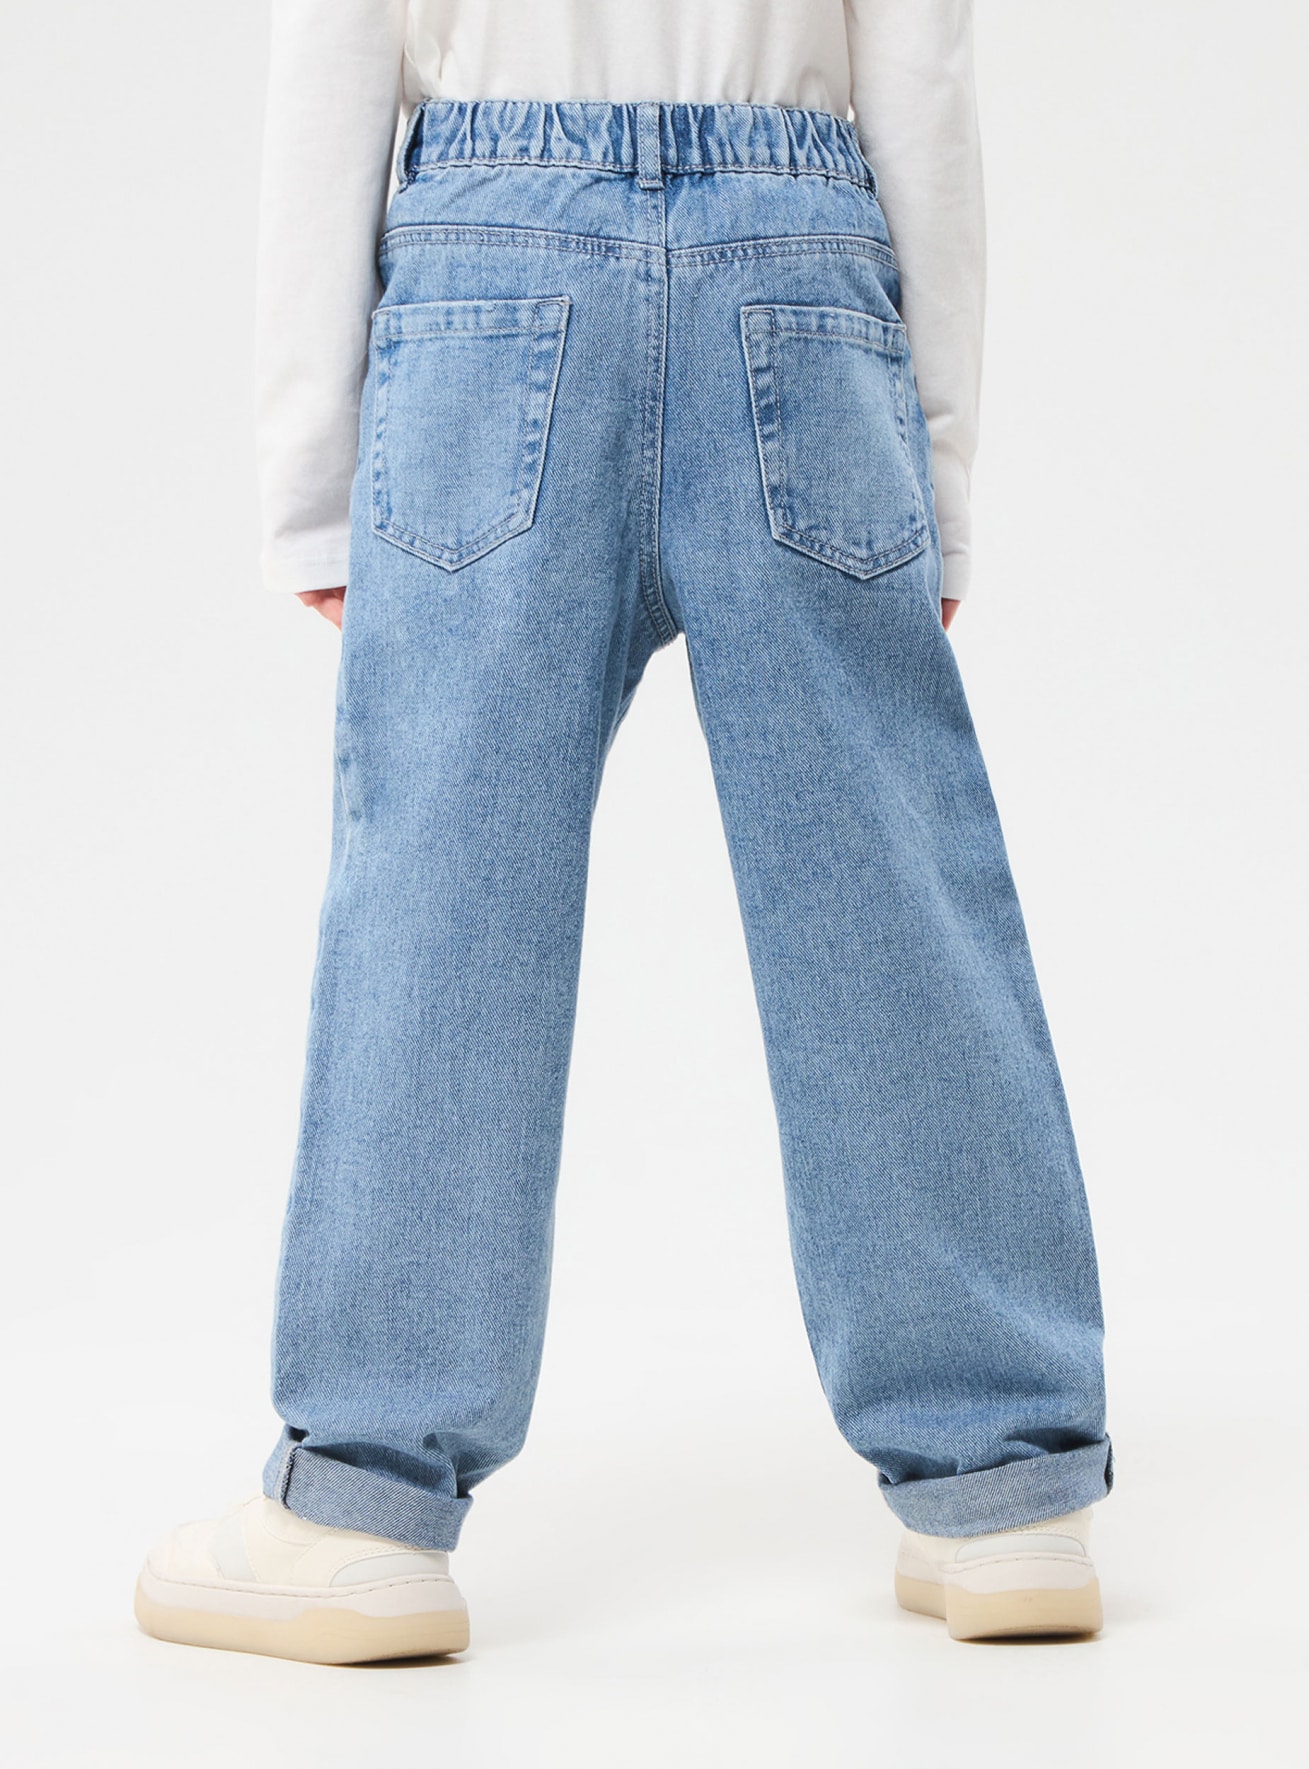 Pantallona xhins të gjata Fëmijë 010